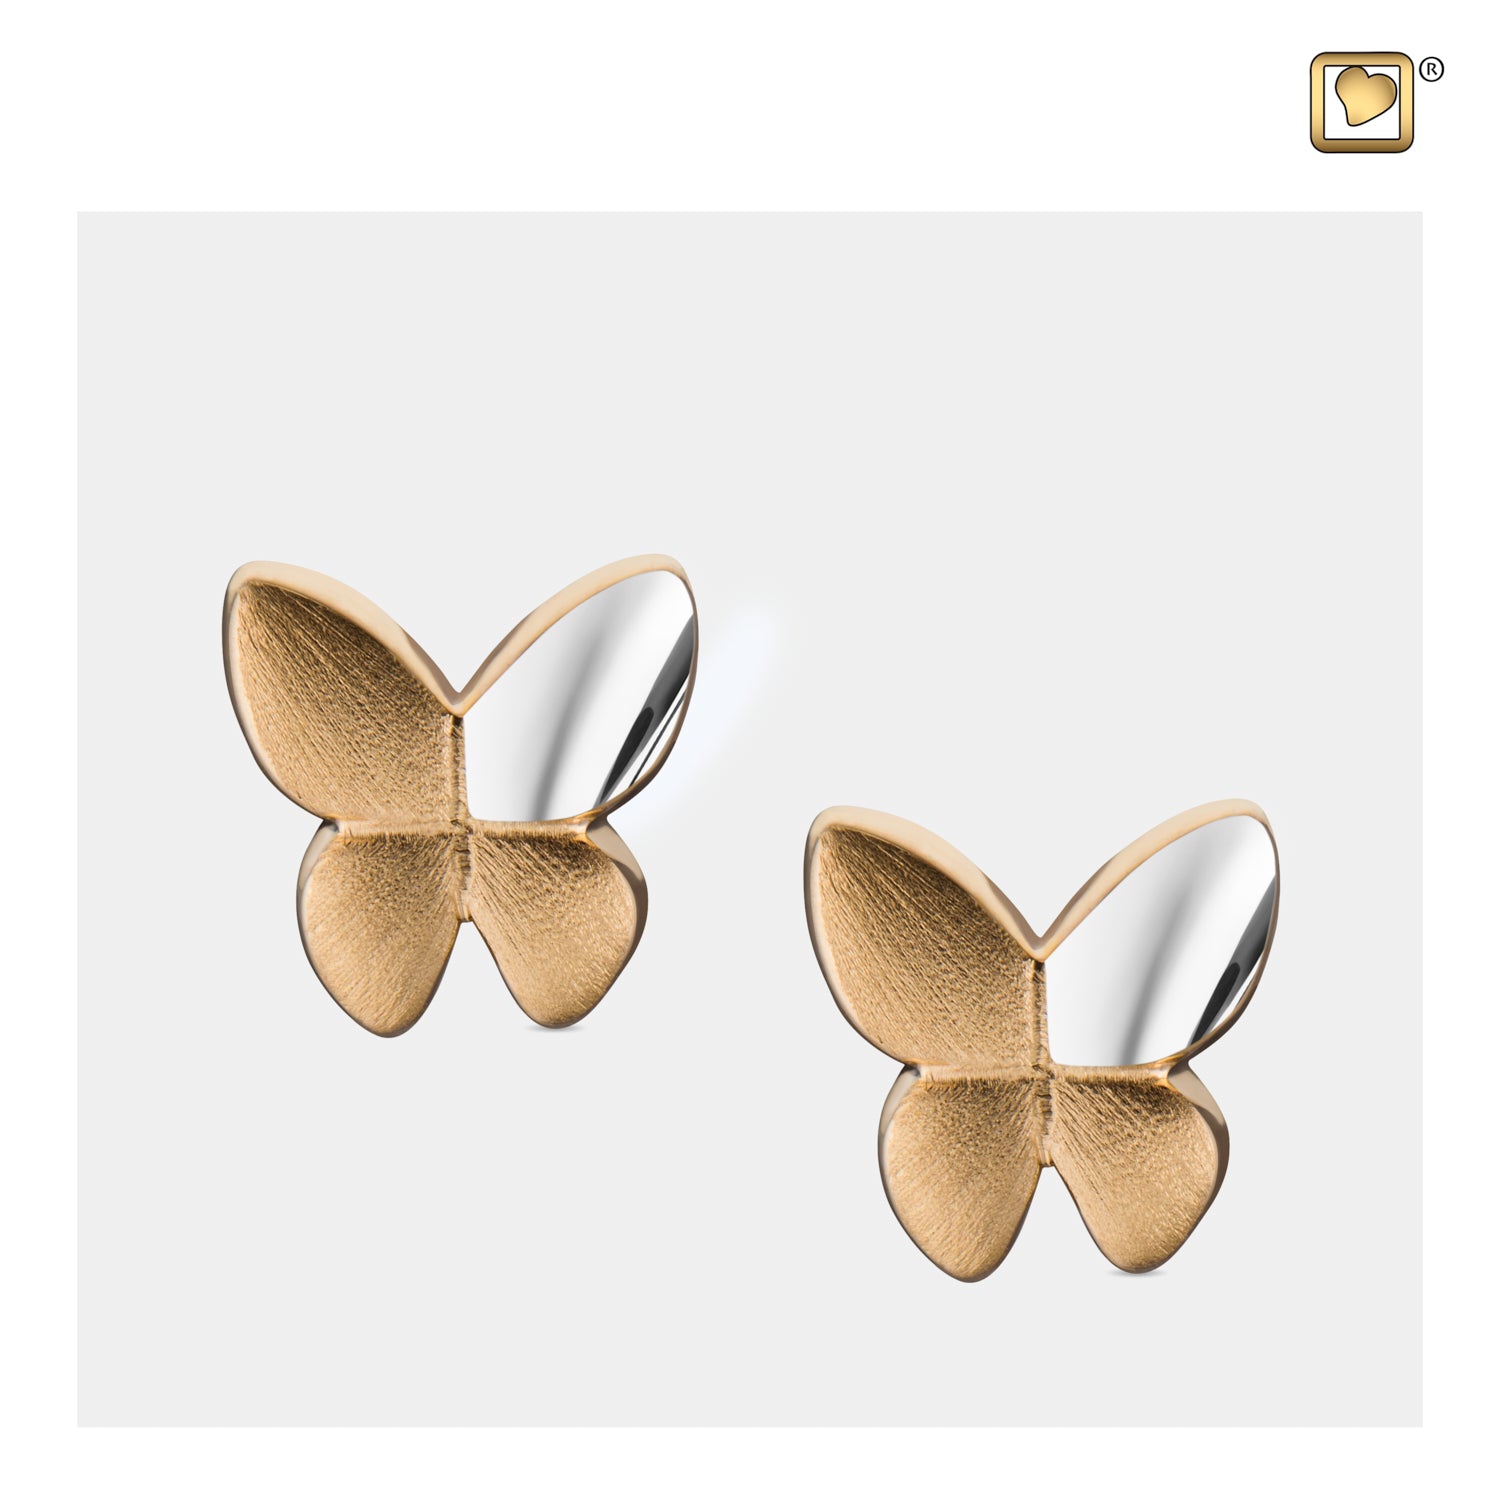 Butterflyª Gold Vermeil Two Tone Sterling Silver Stud Earrings